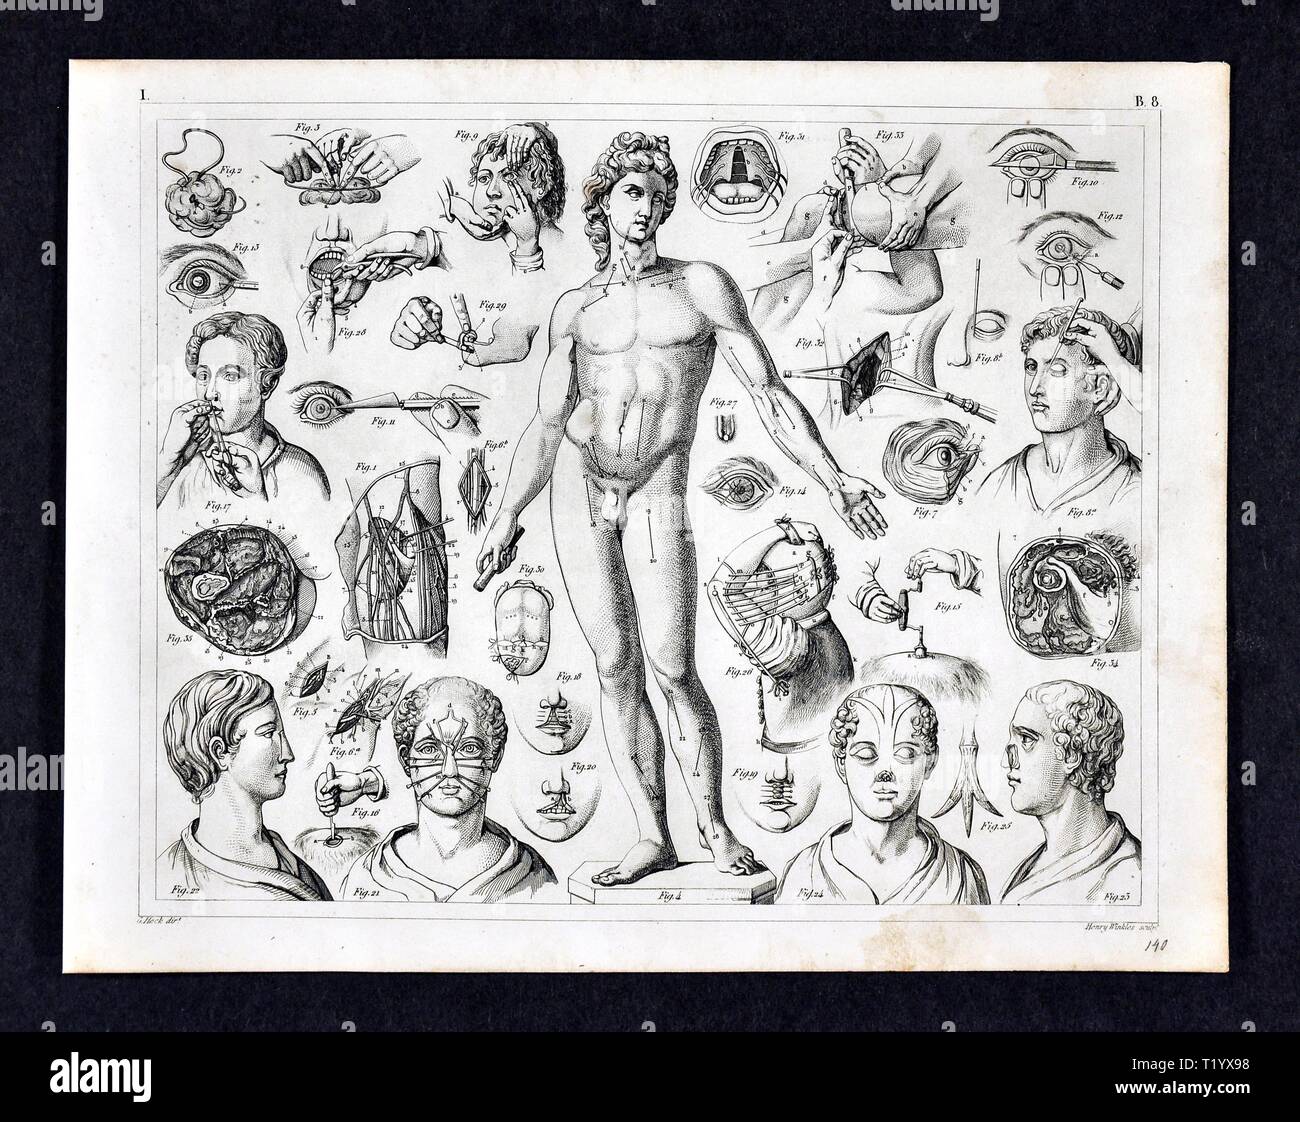 1849 Medical Illustration de diverses techniques chirurgicales du 19e siècle et les procédures Banque D'Images